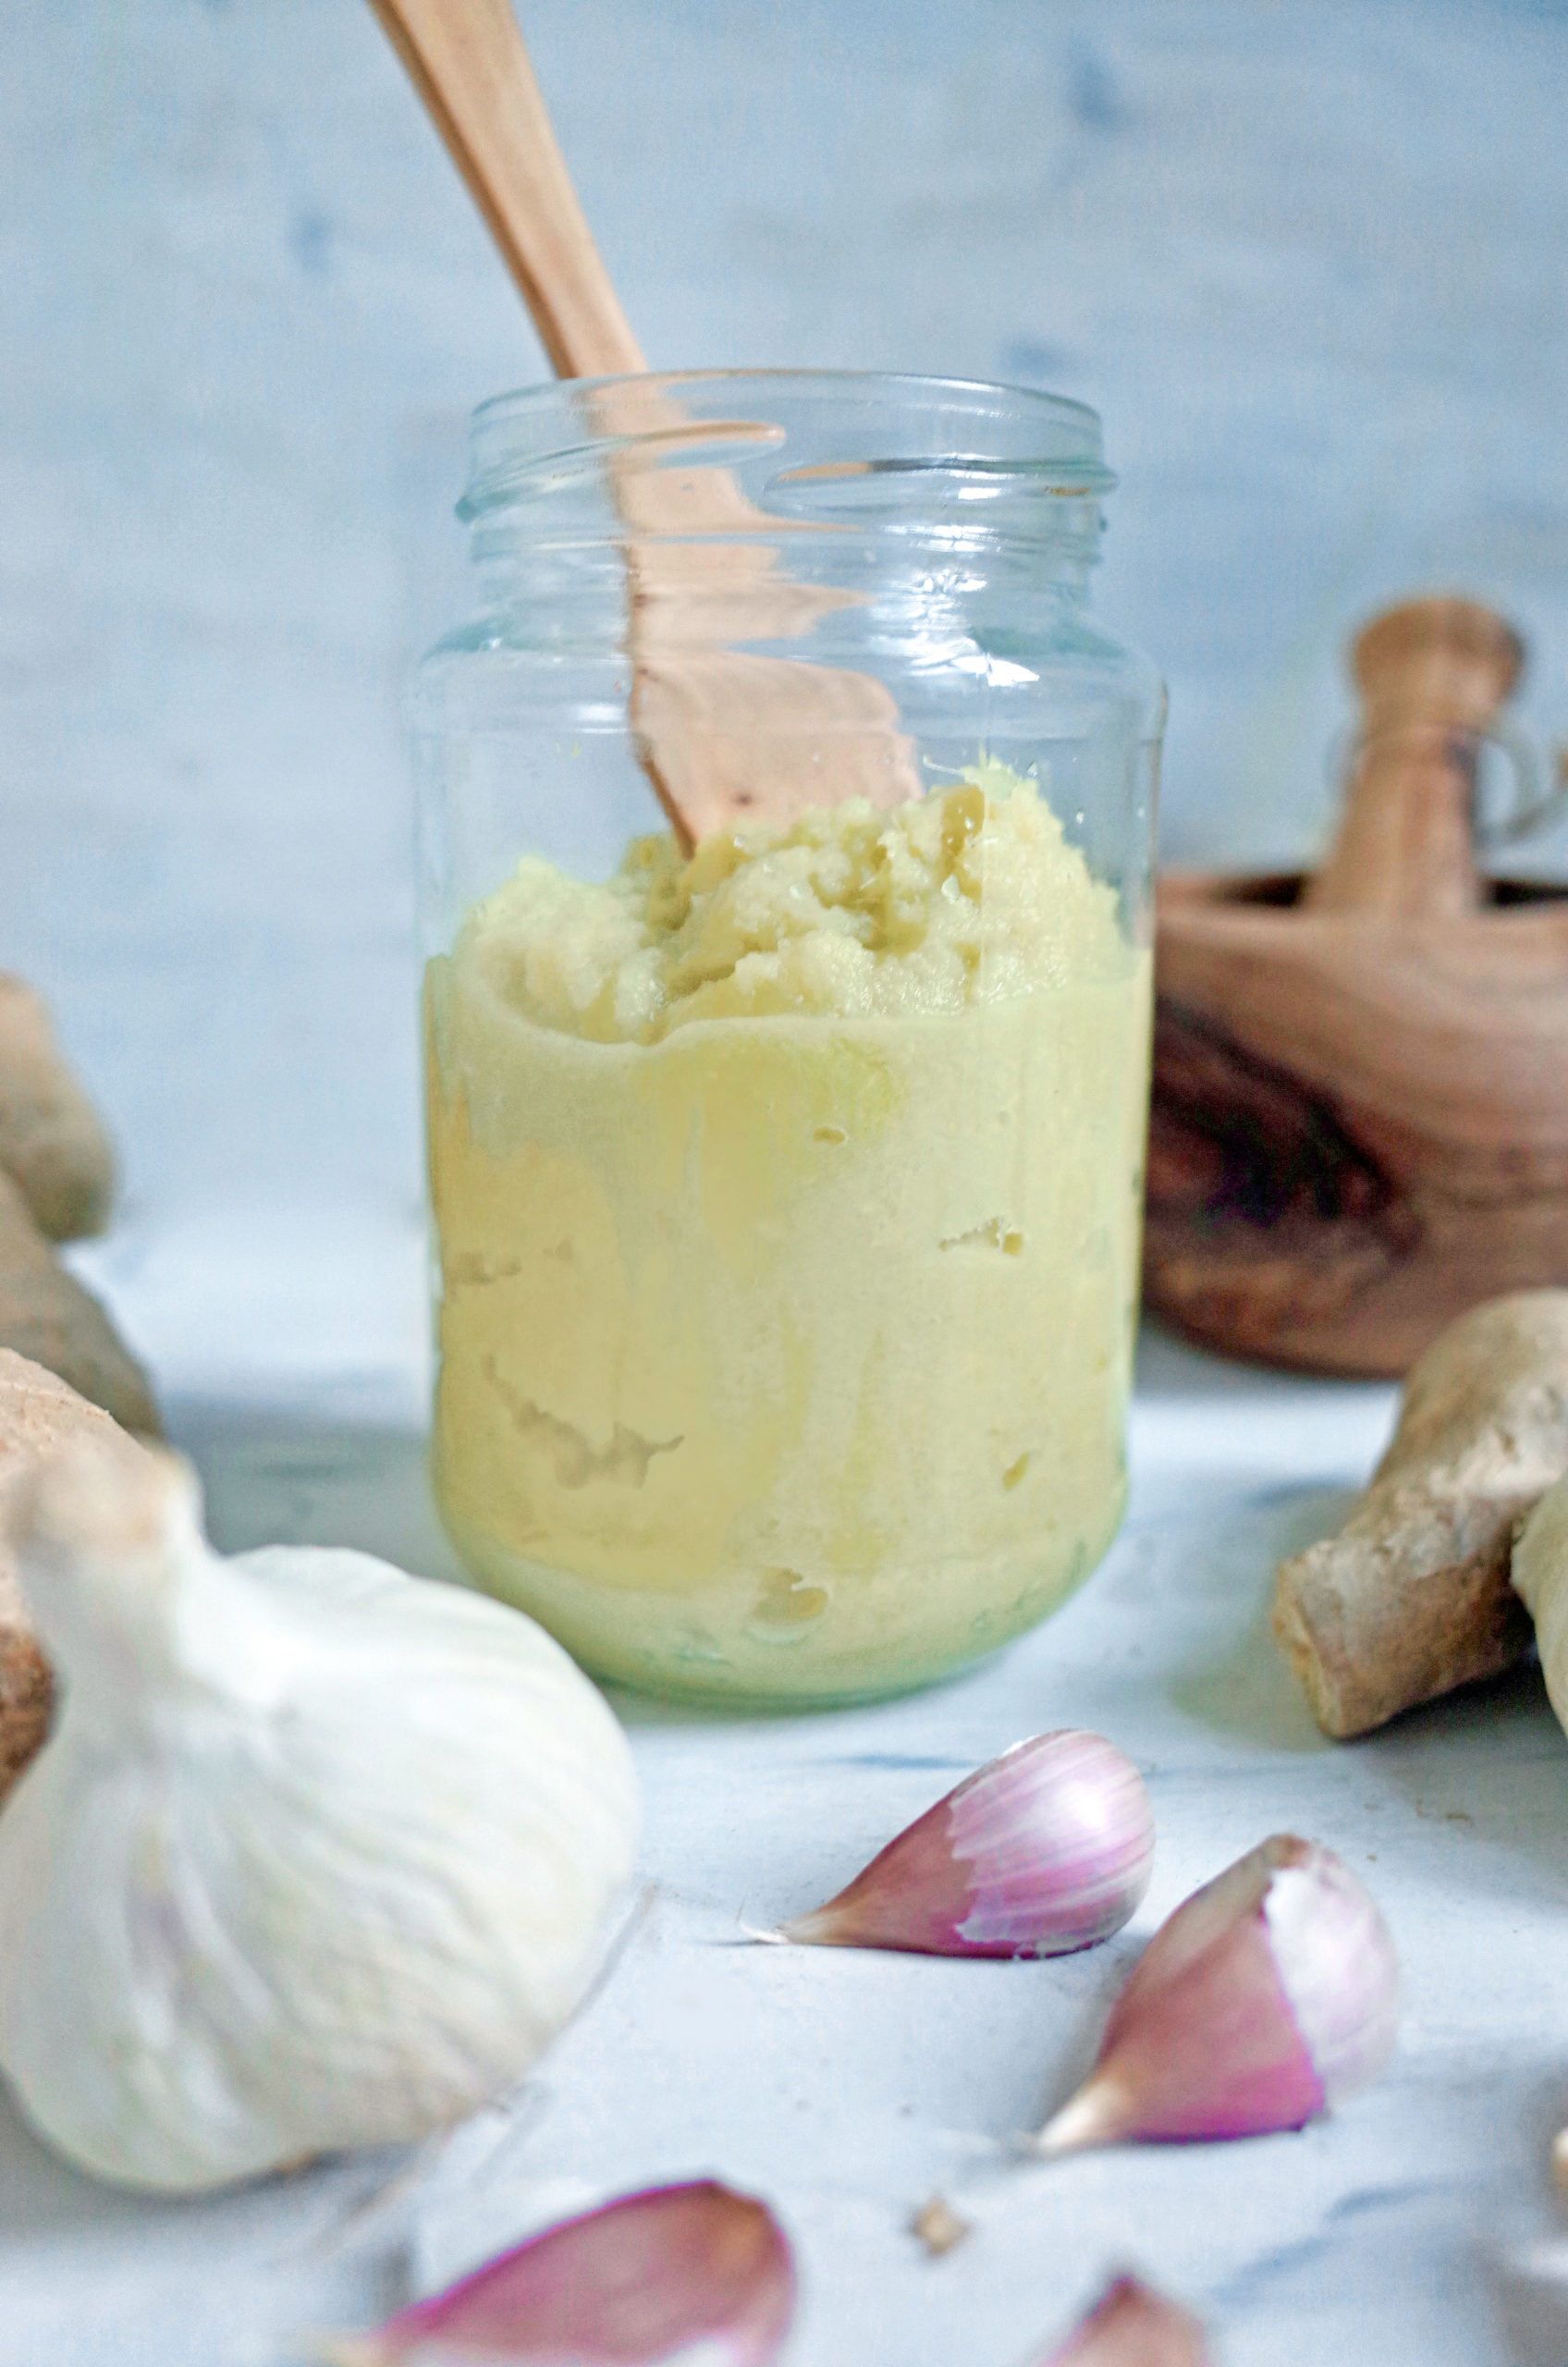 How to make Fresh Ginger Garlic Paste